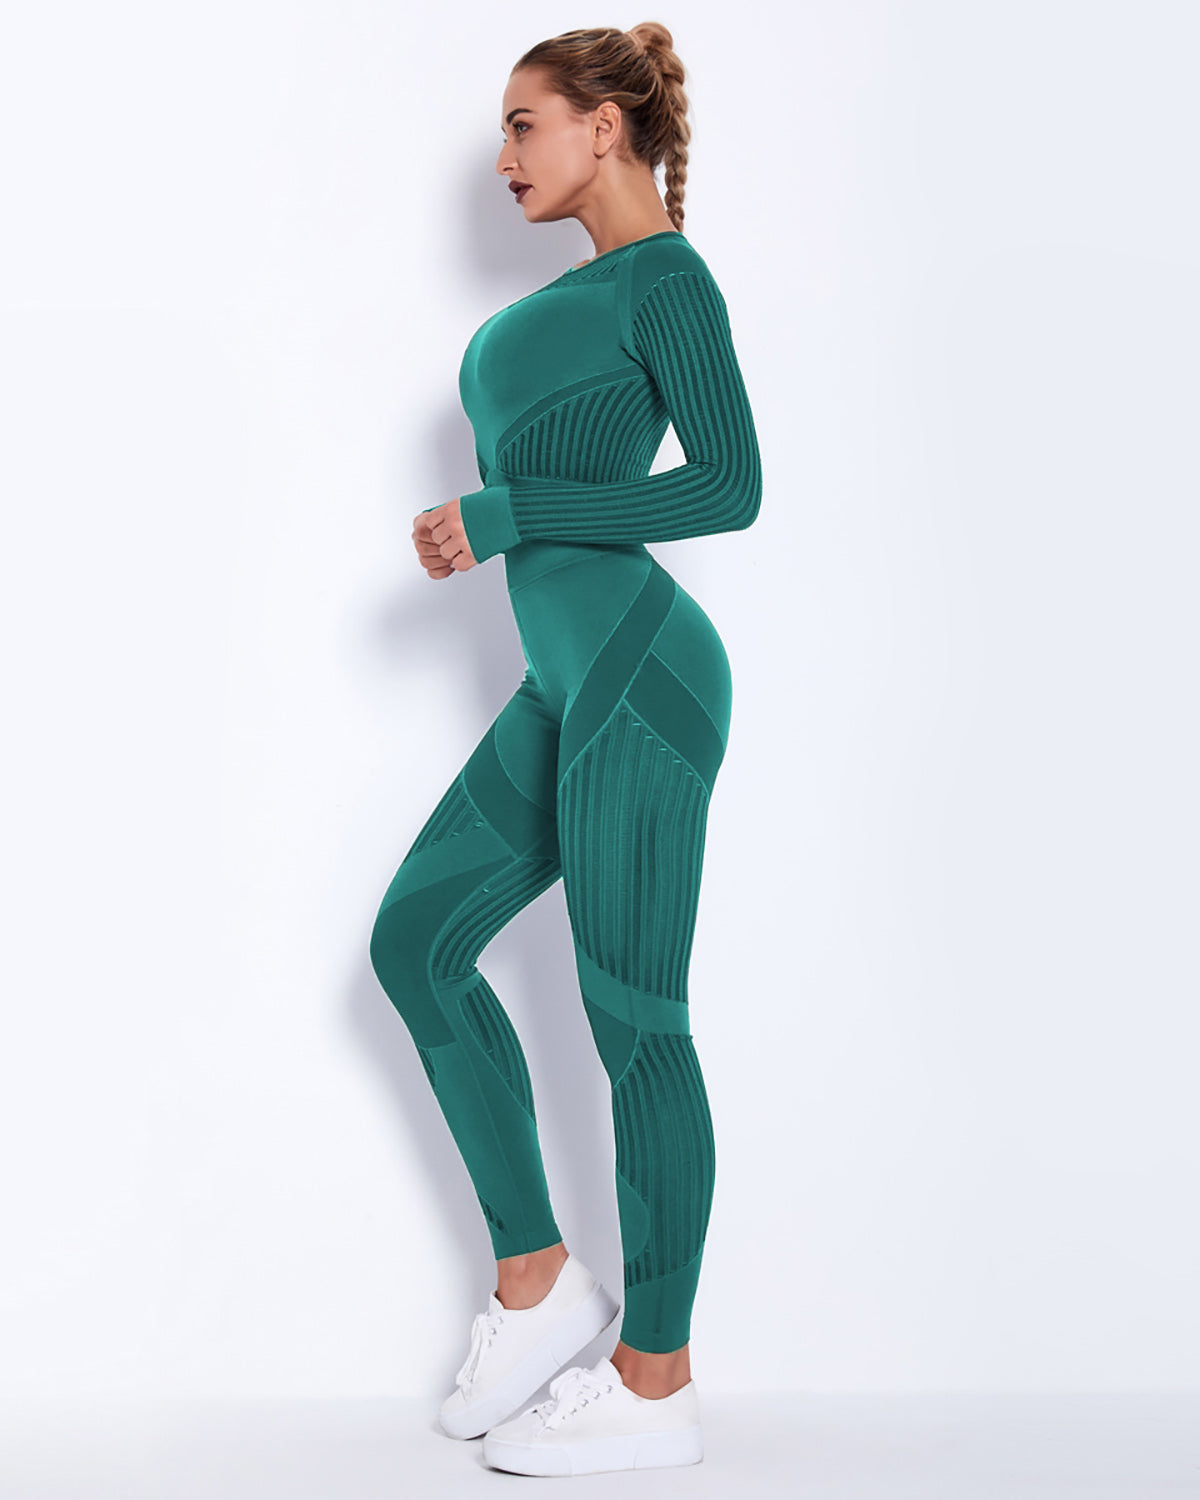 Lorica Long Sleeve – Amelia Activewear